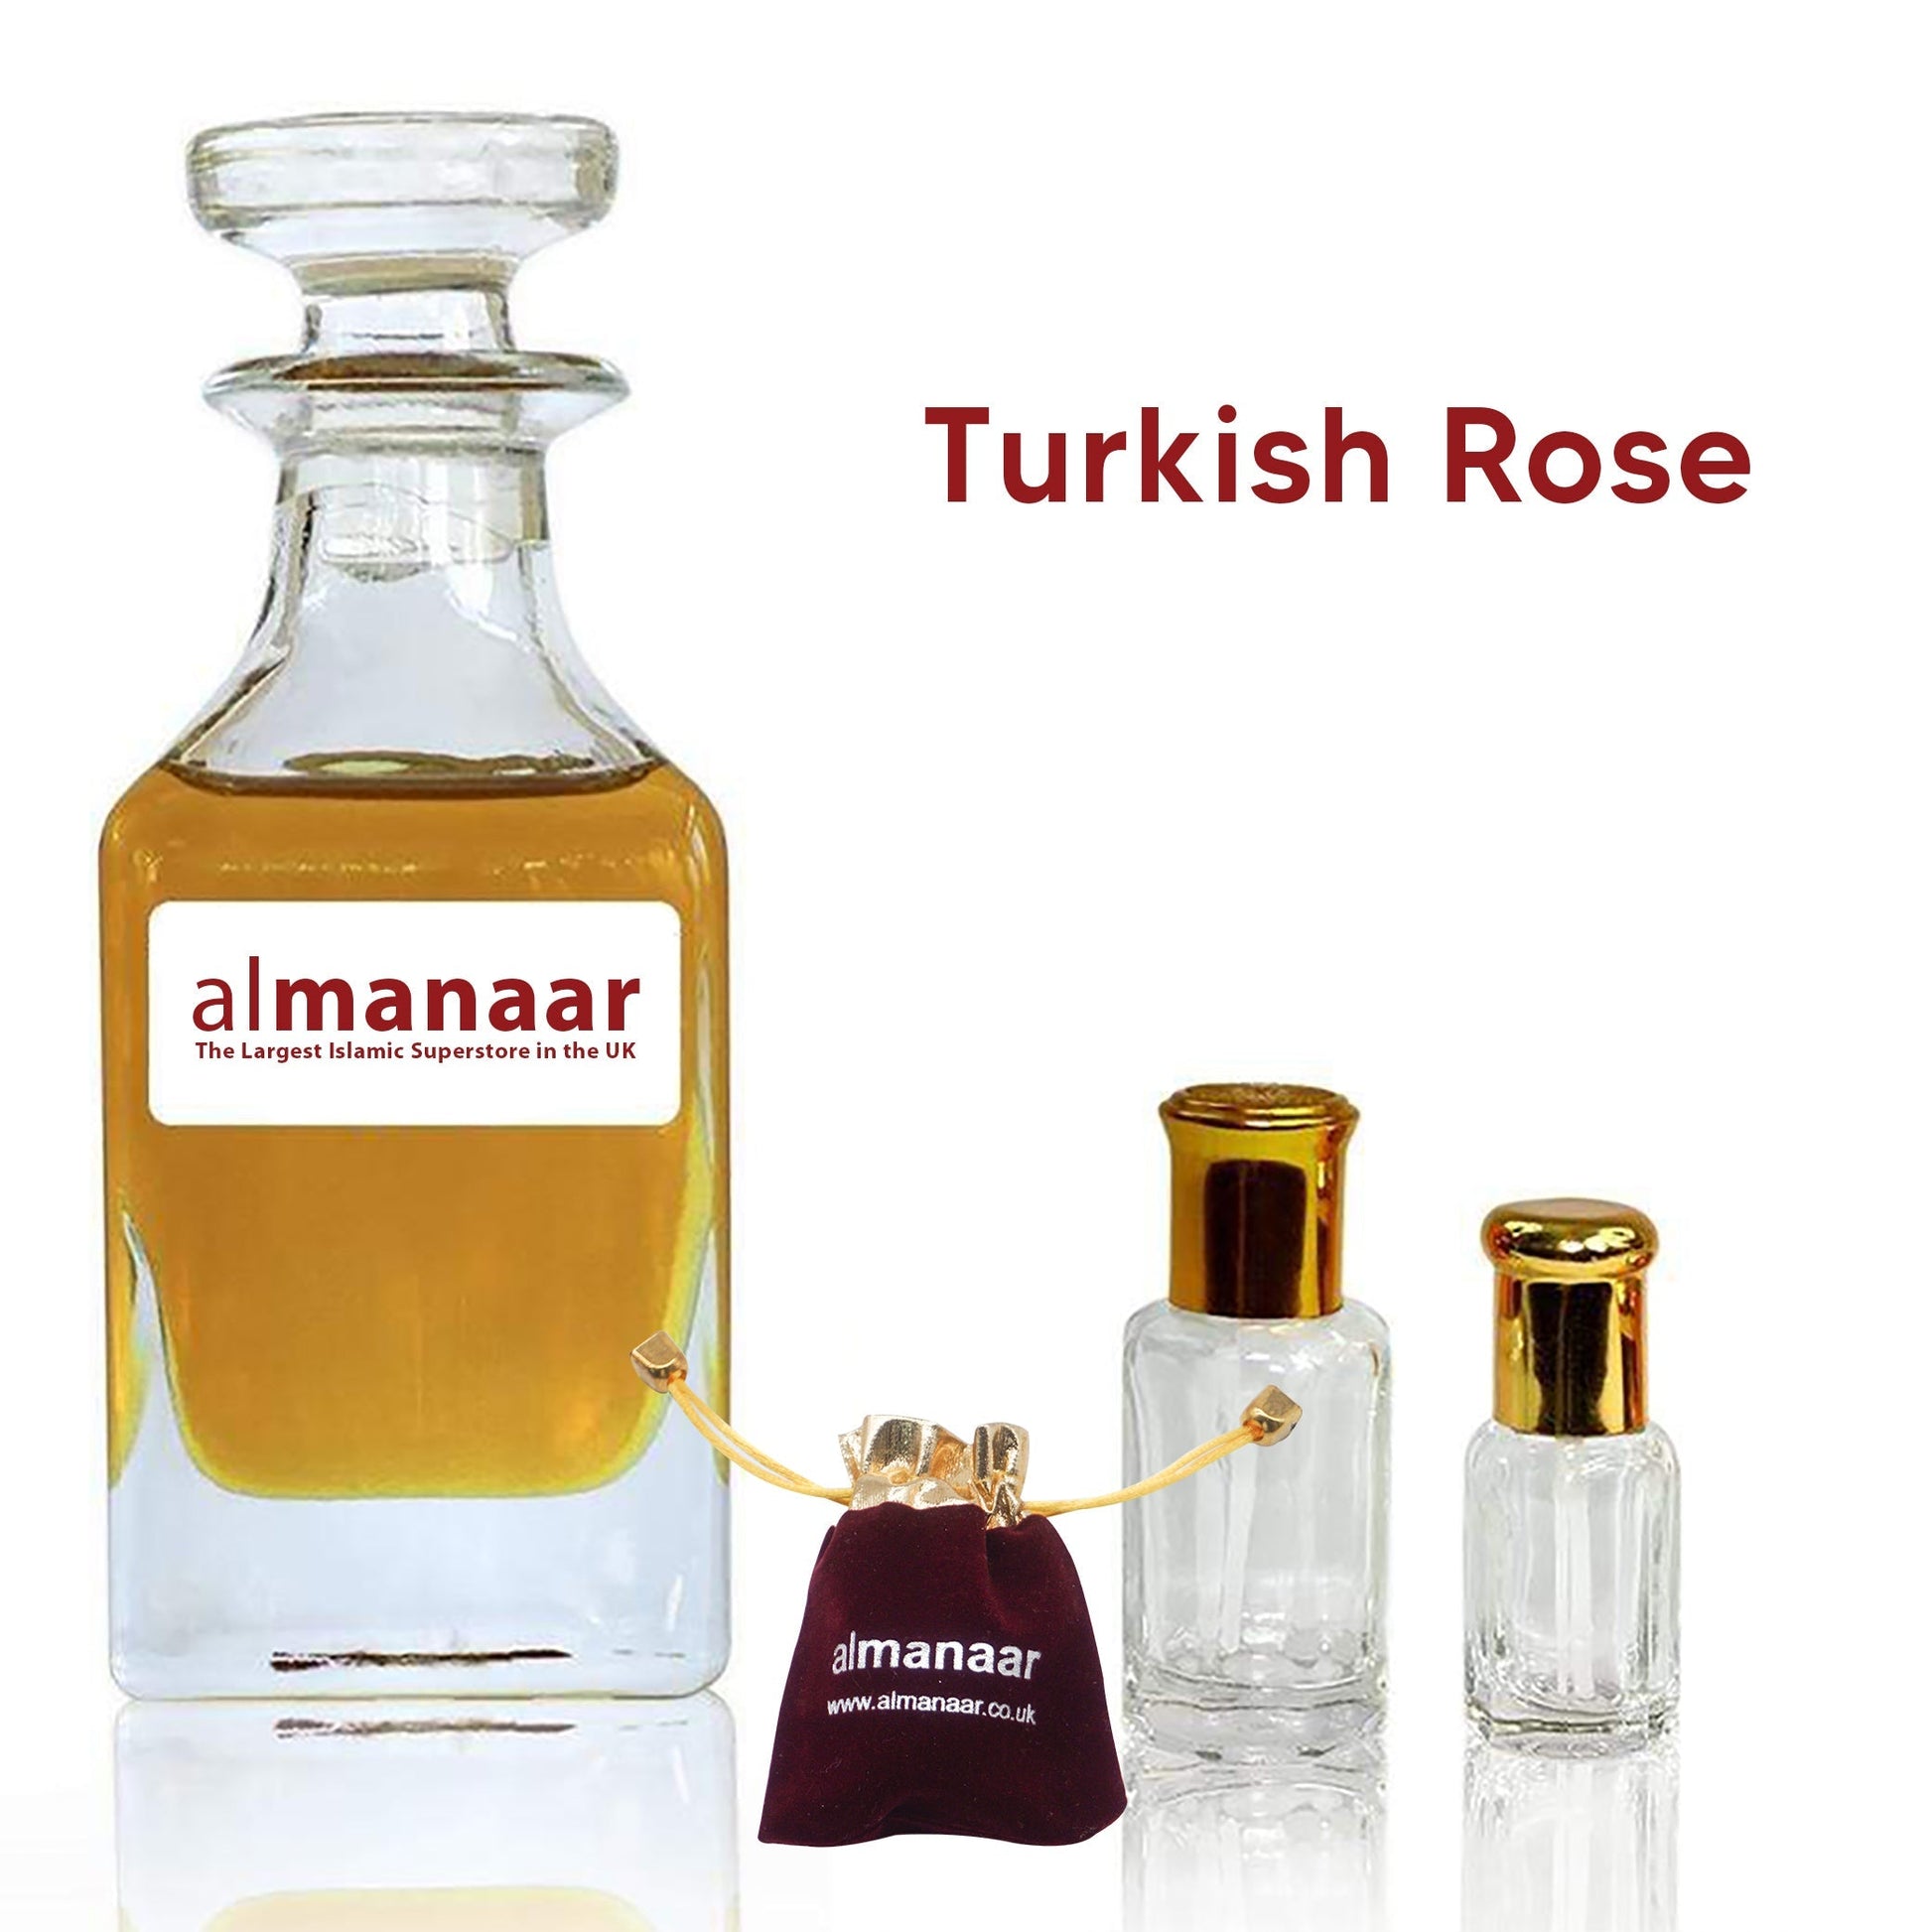 Turkish Rose - Concentrated Perfume Oil by almanaar-almanaar Islamic Store